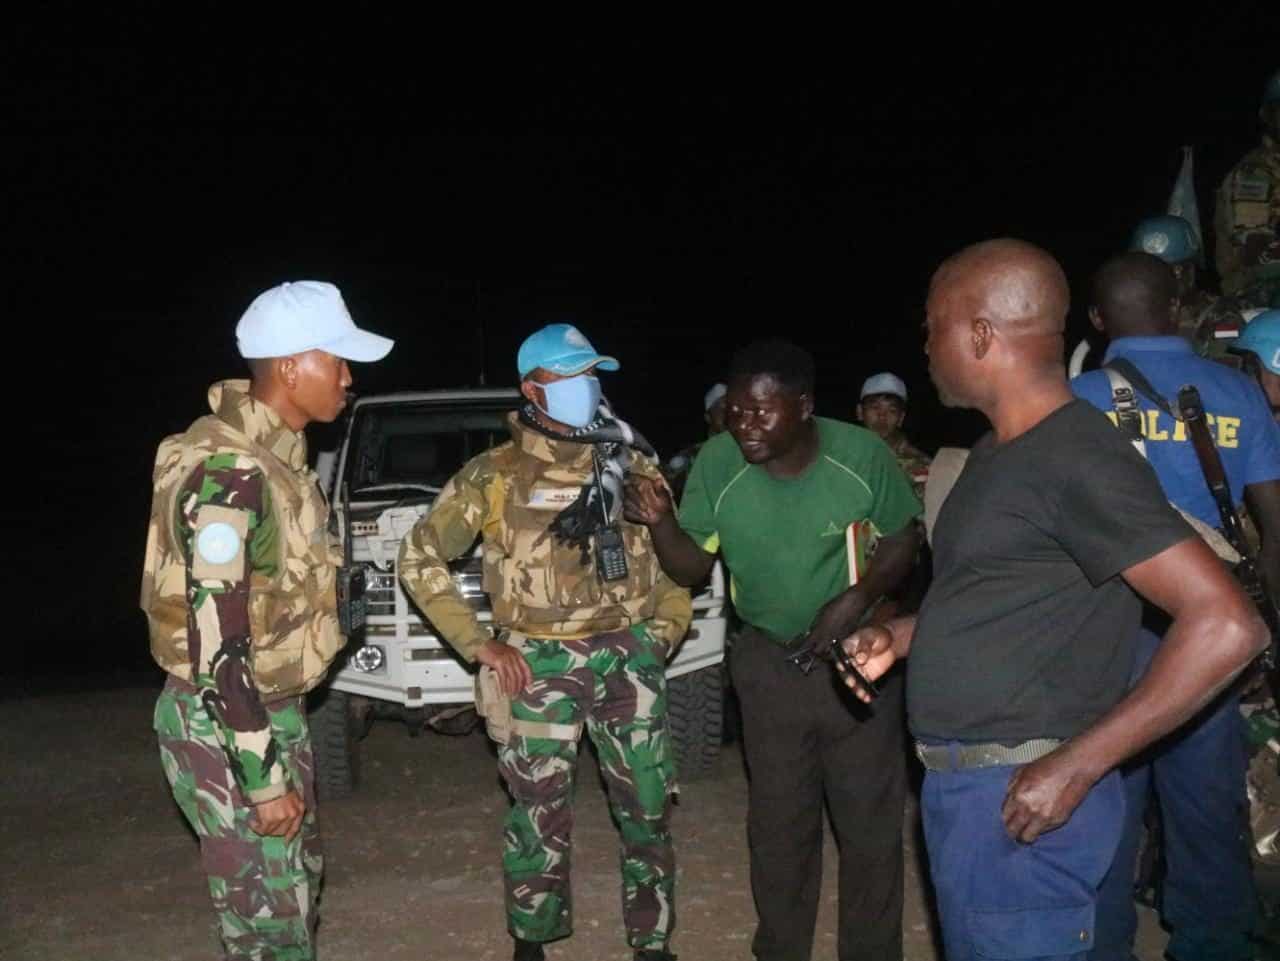 Satgas Indo RDB MONUSCO Bebaskan Sandera dari Bandit Bersenjata di Kongo